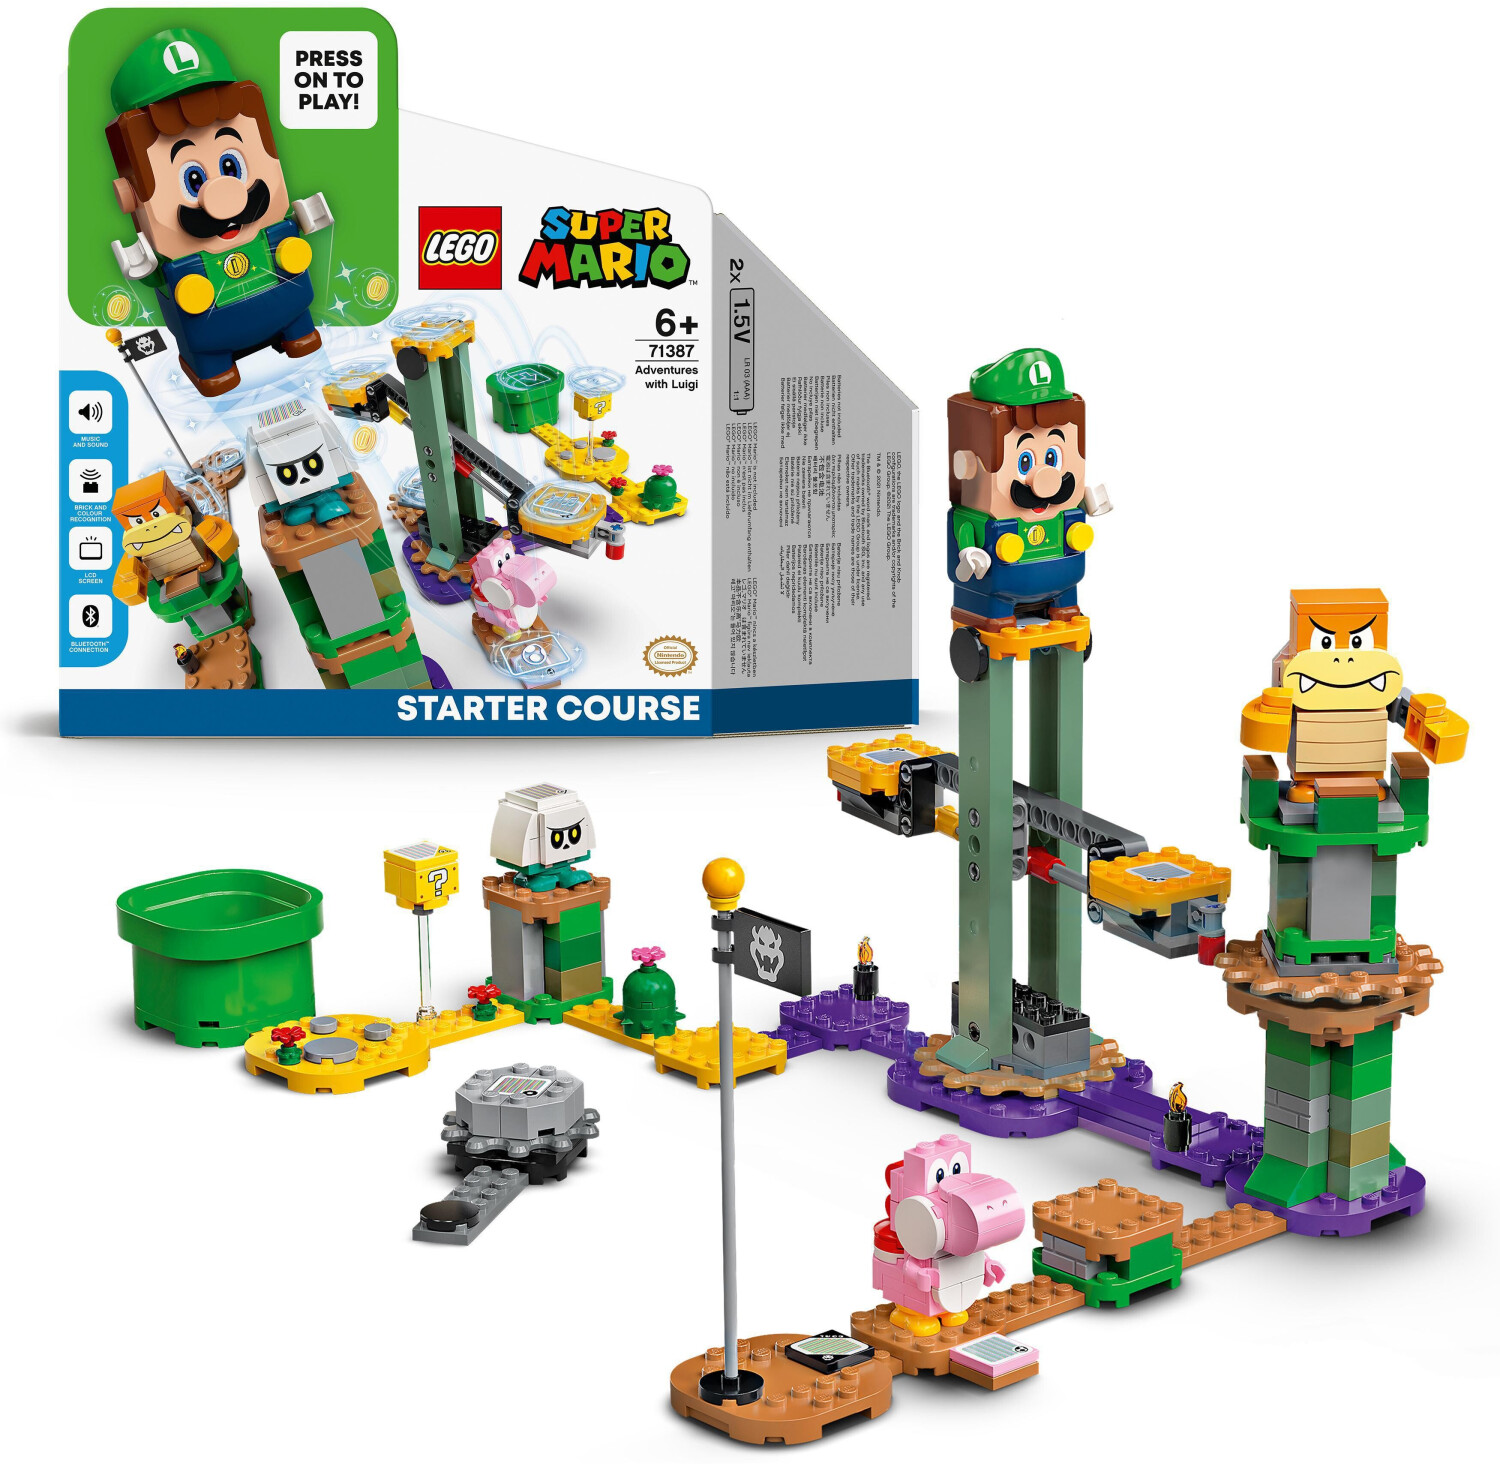 Acheter Nintendo - Super Mario Ensemble du château de lave - Jeux et jouets  prix promo neuf et occasion pas cher